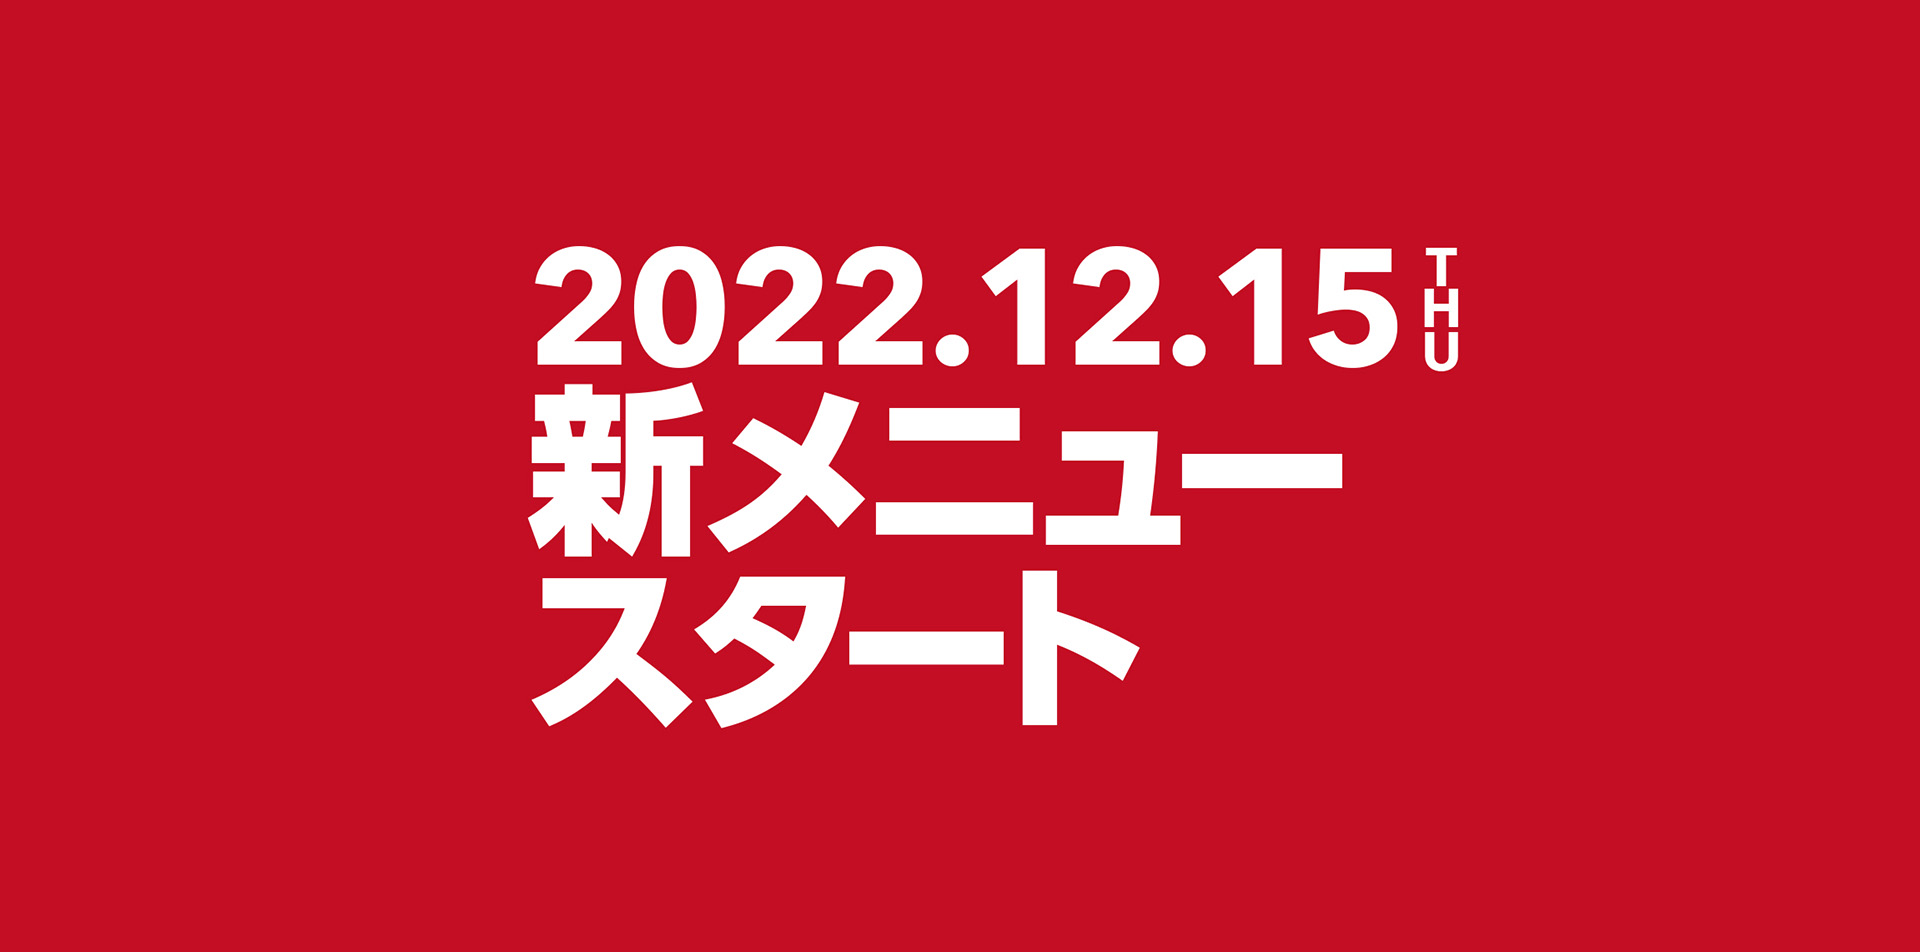 2022.12.15 THU新メニュースタート